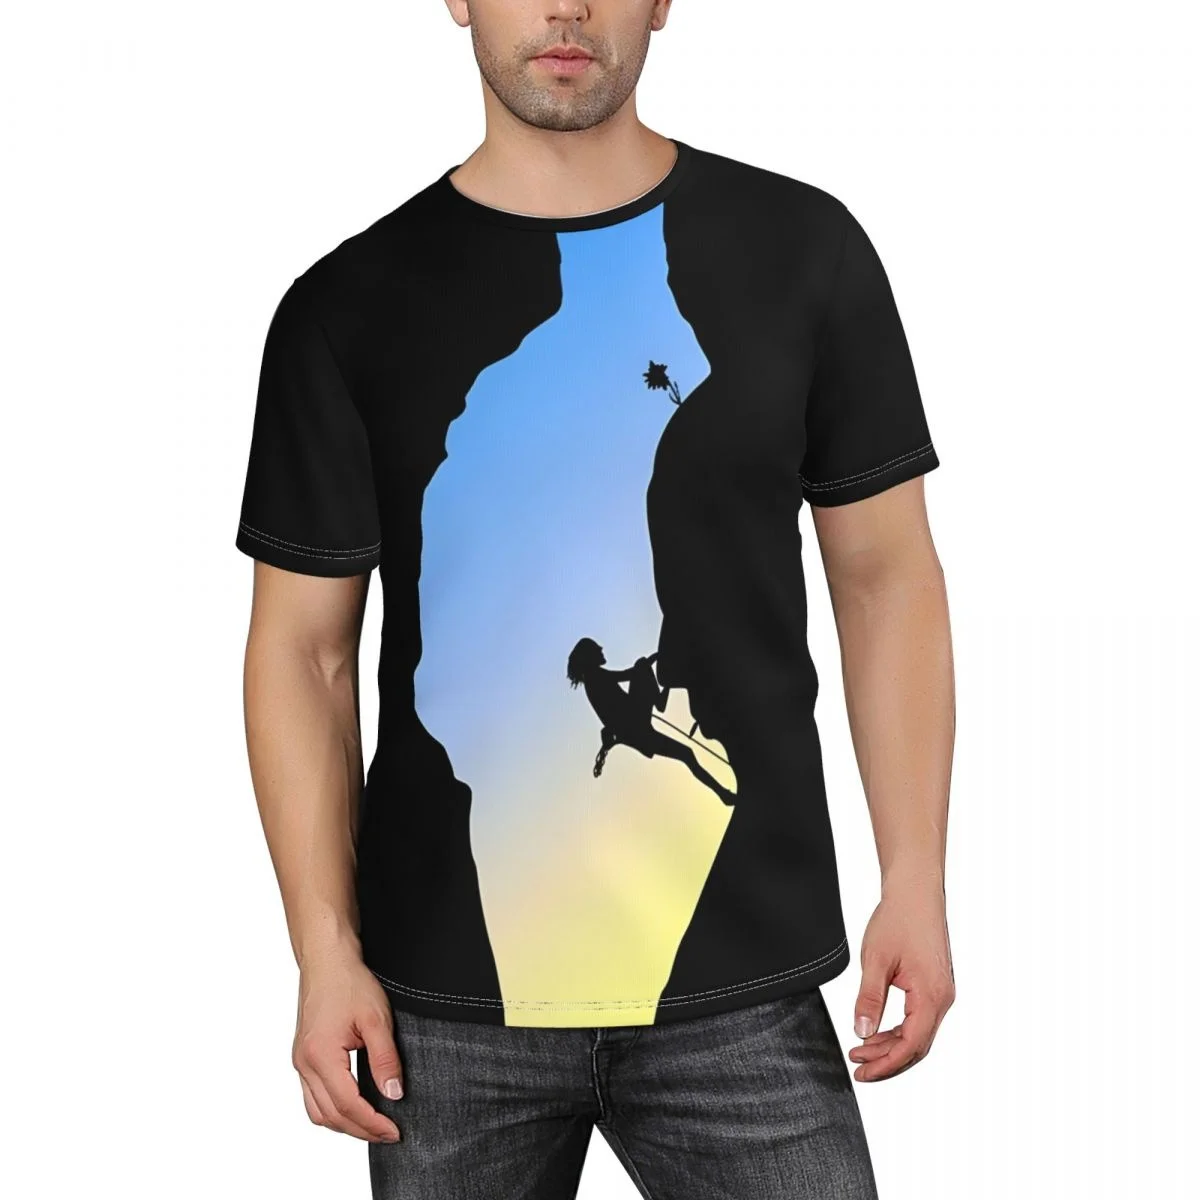 

Мужская футболка с принтом из полиэстера для альпинизма, уличная спортивная быстросохнущая одежда, повседневная свободная футболка, уличные футболки